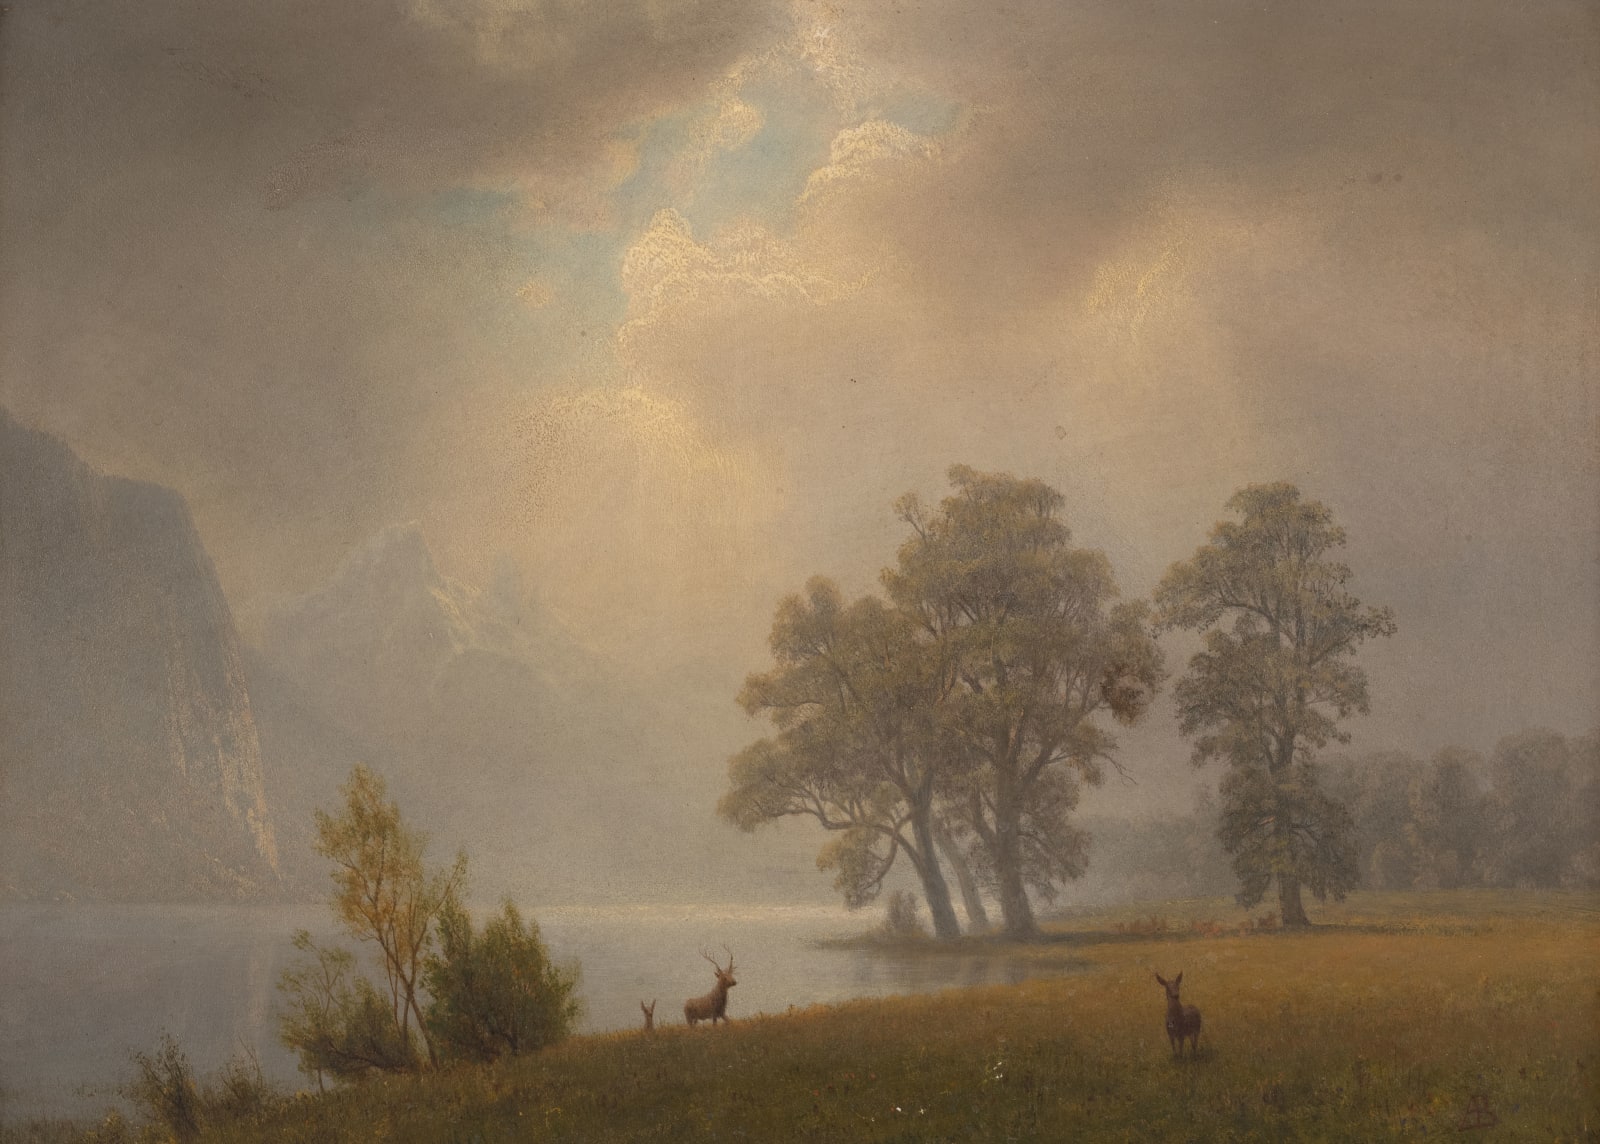 Albert Bierstadt, View in the Sierras, undated